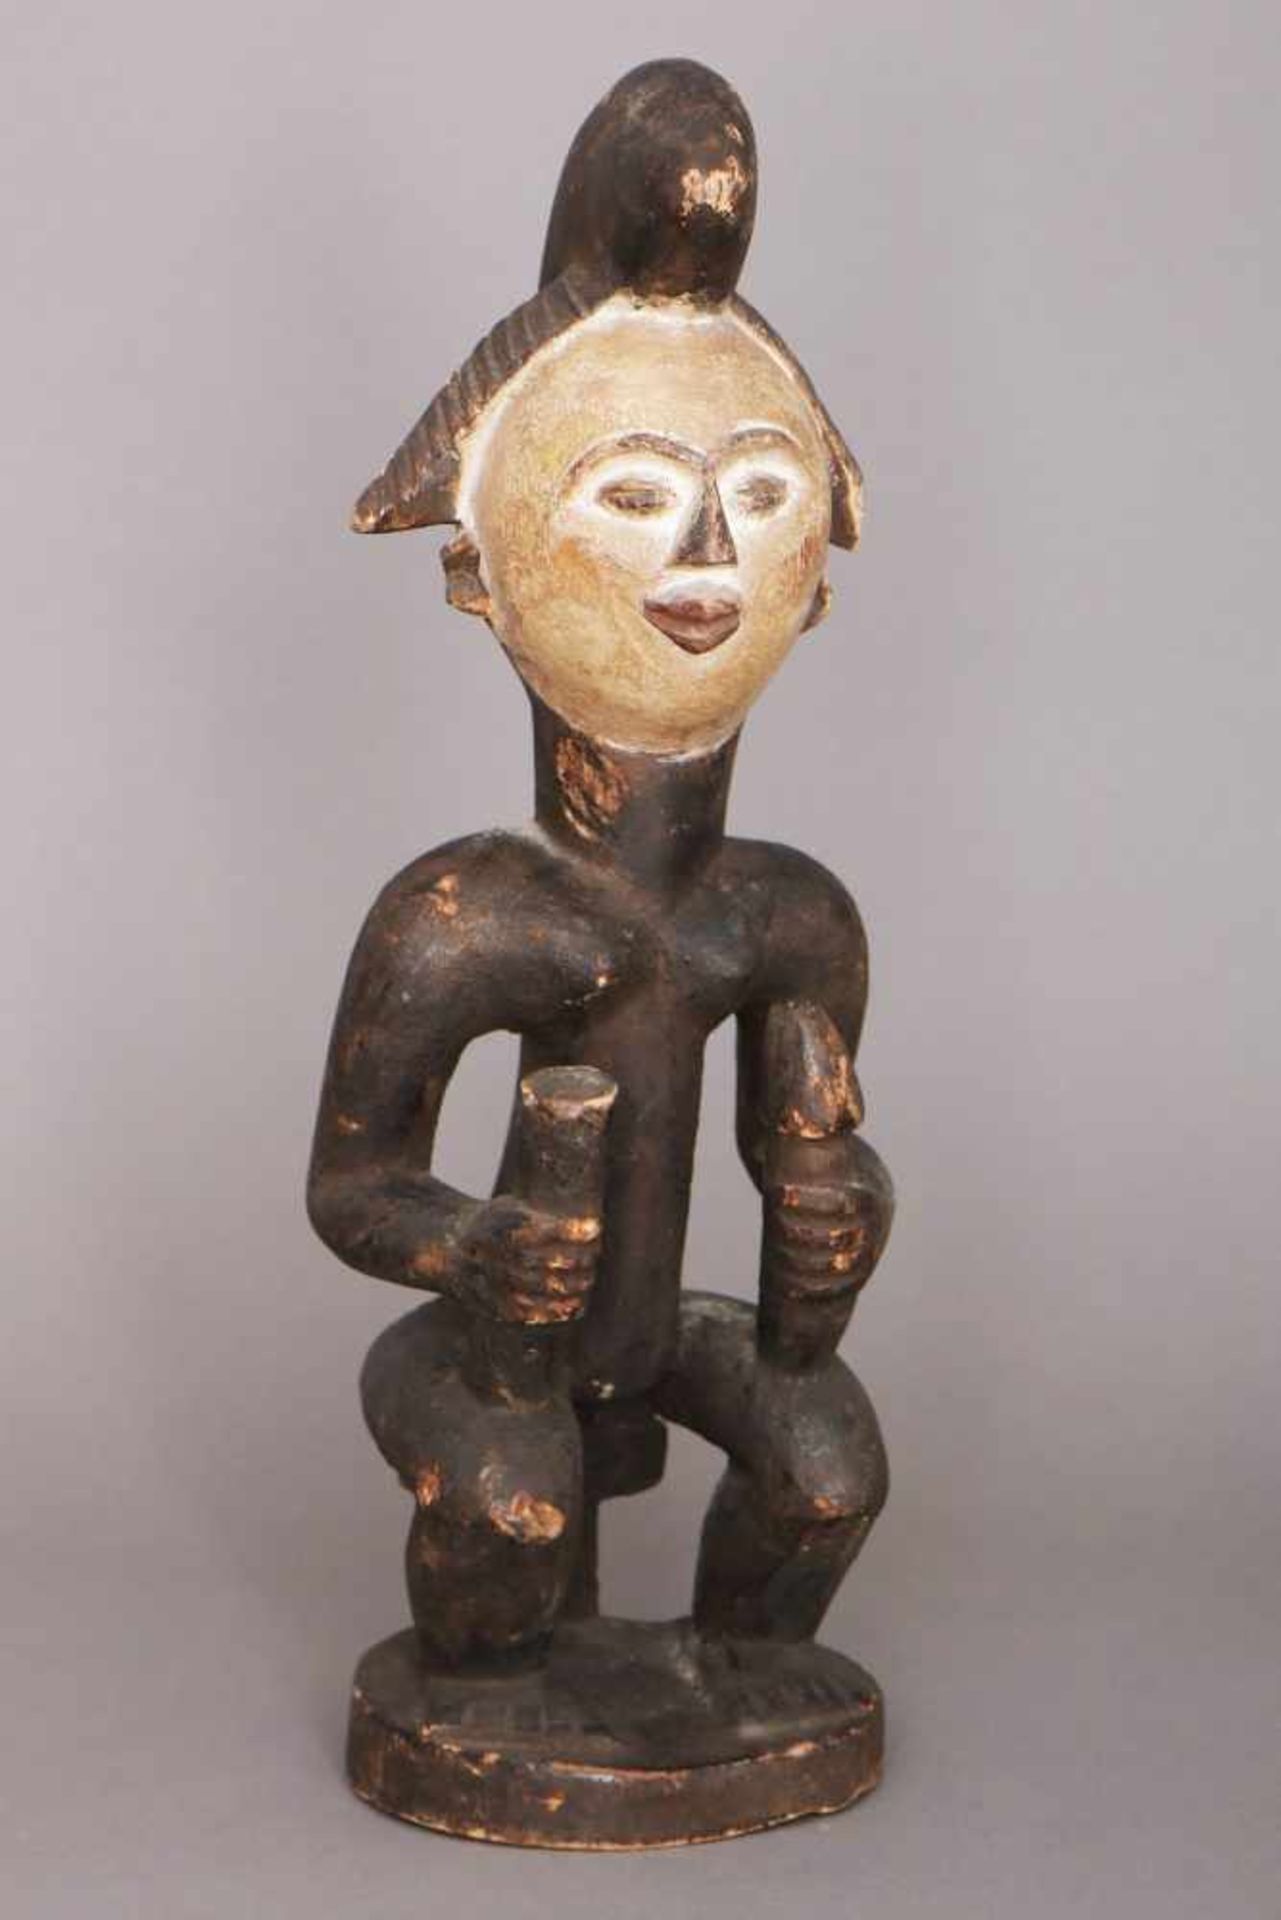 Afrikanische Ritualfigur der Lumbo, GabunHolz, geschnitzt, dunkel patiniert, das Gesicht weiß